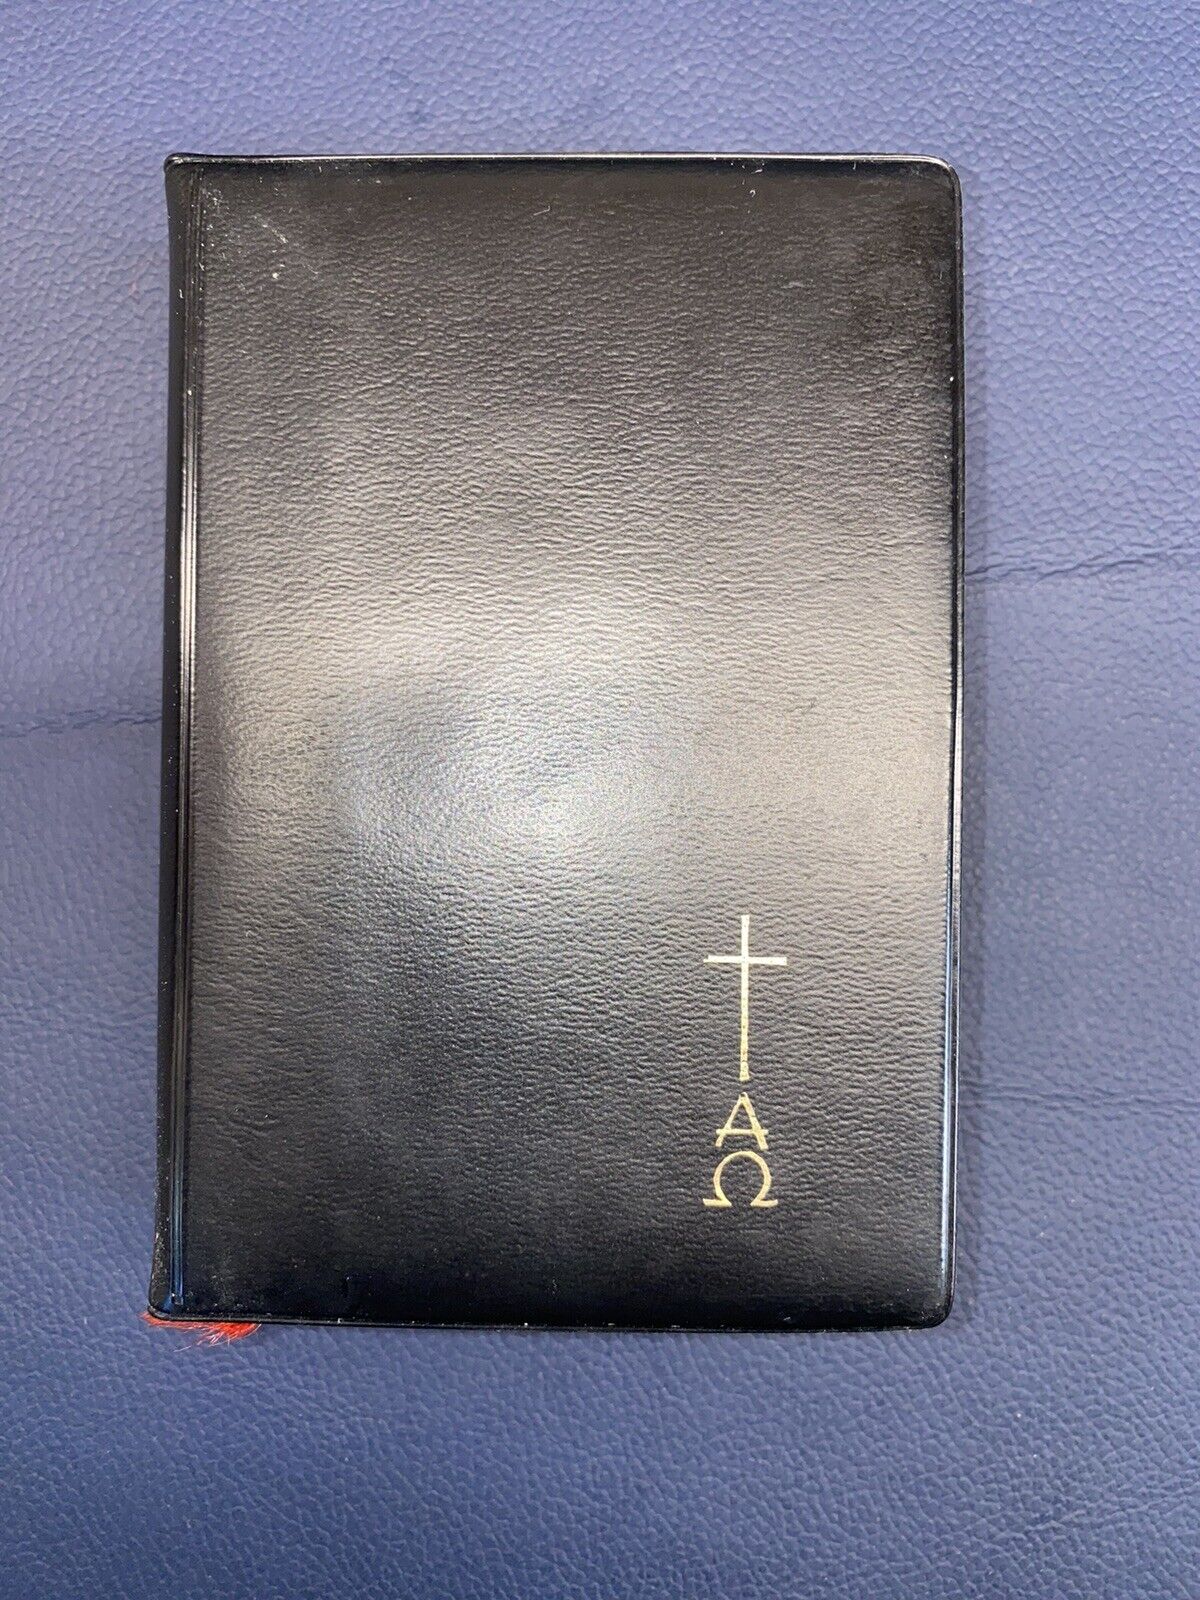 Sagrada Biblia “DE BOLSILLO“  1967, Editorial Regina, Cuarta Edición.